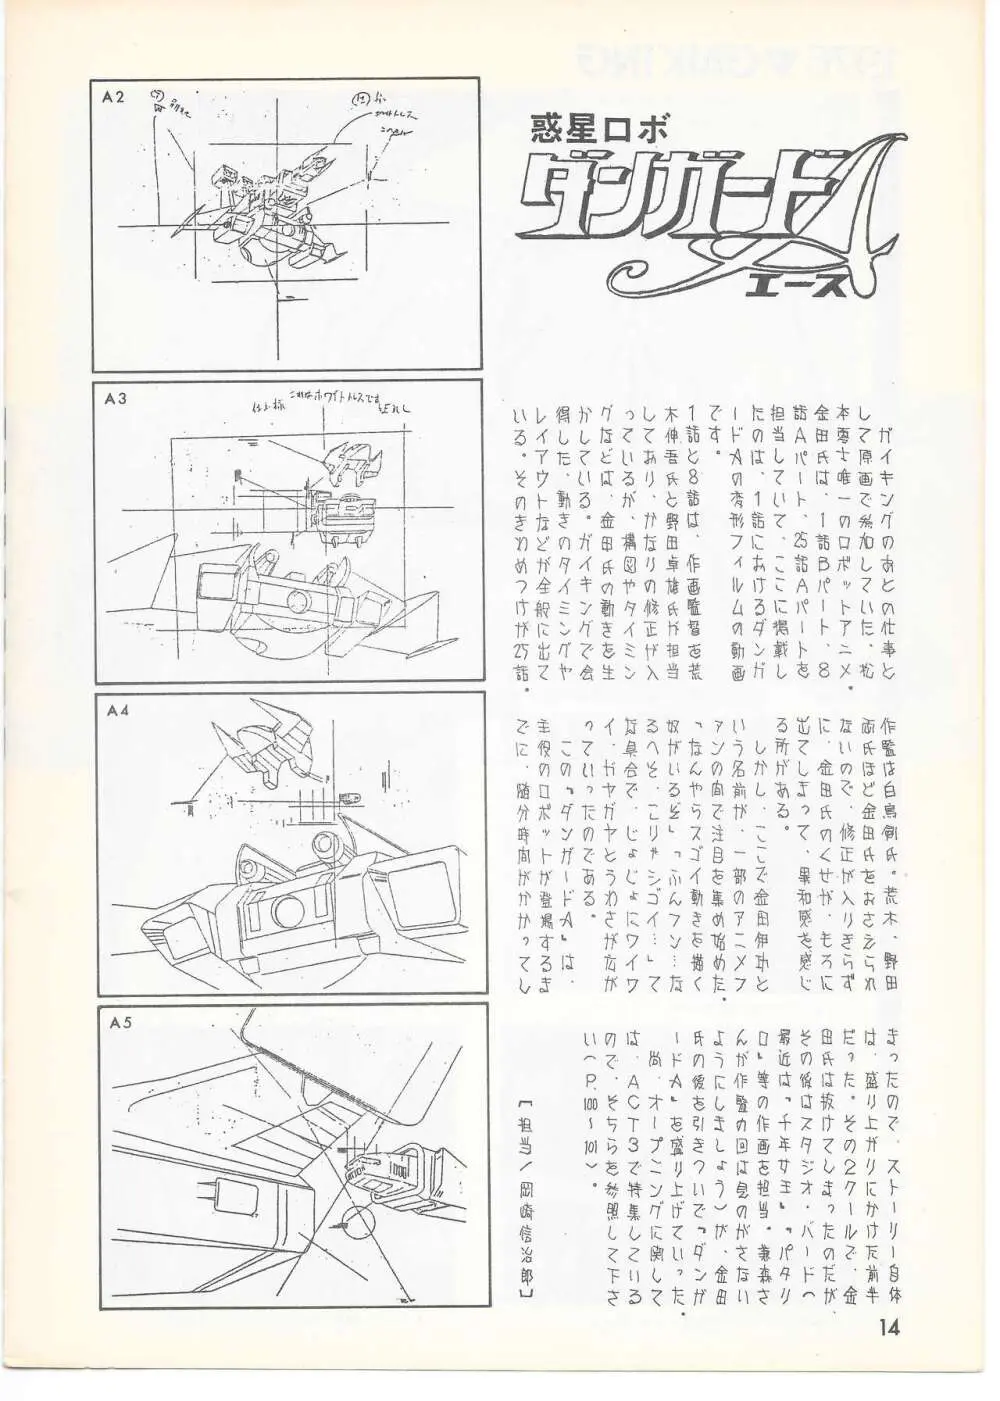 THE ANIMATOR 1 金田伊功特集号 13ページ